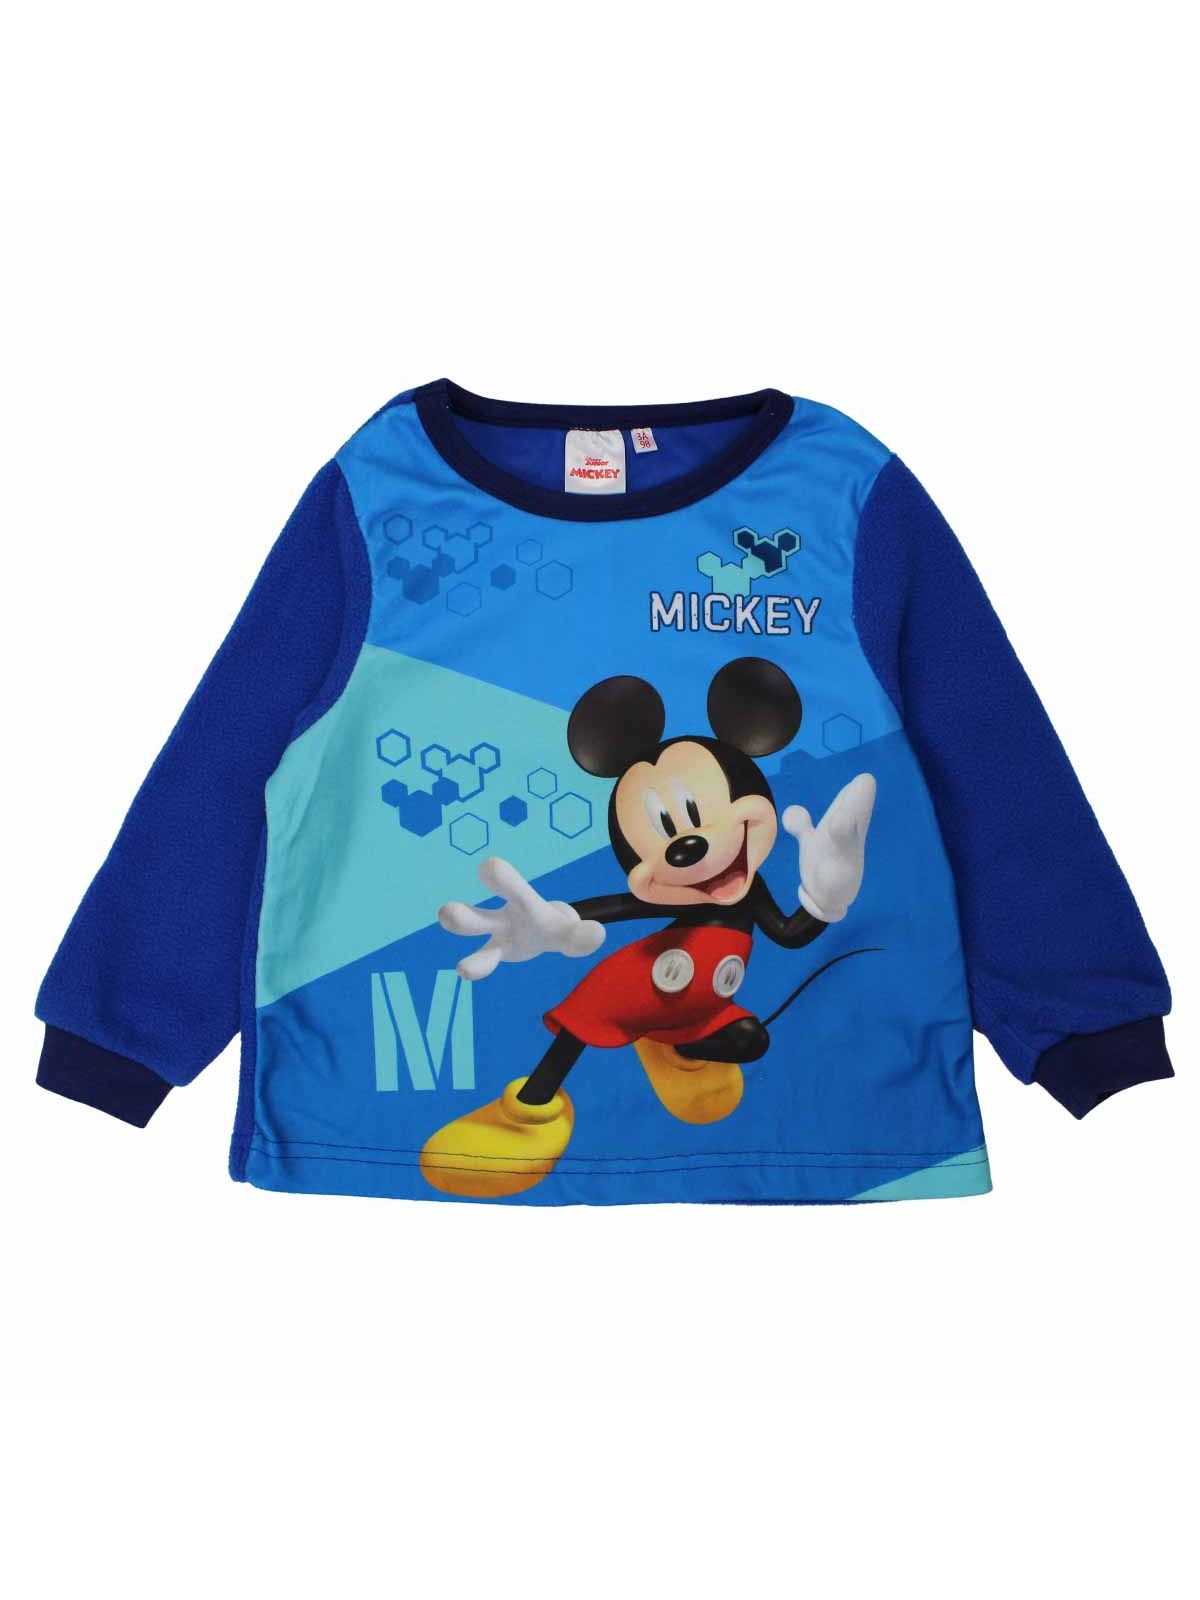 Mickey pigiama in pile